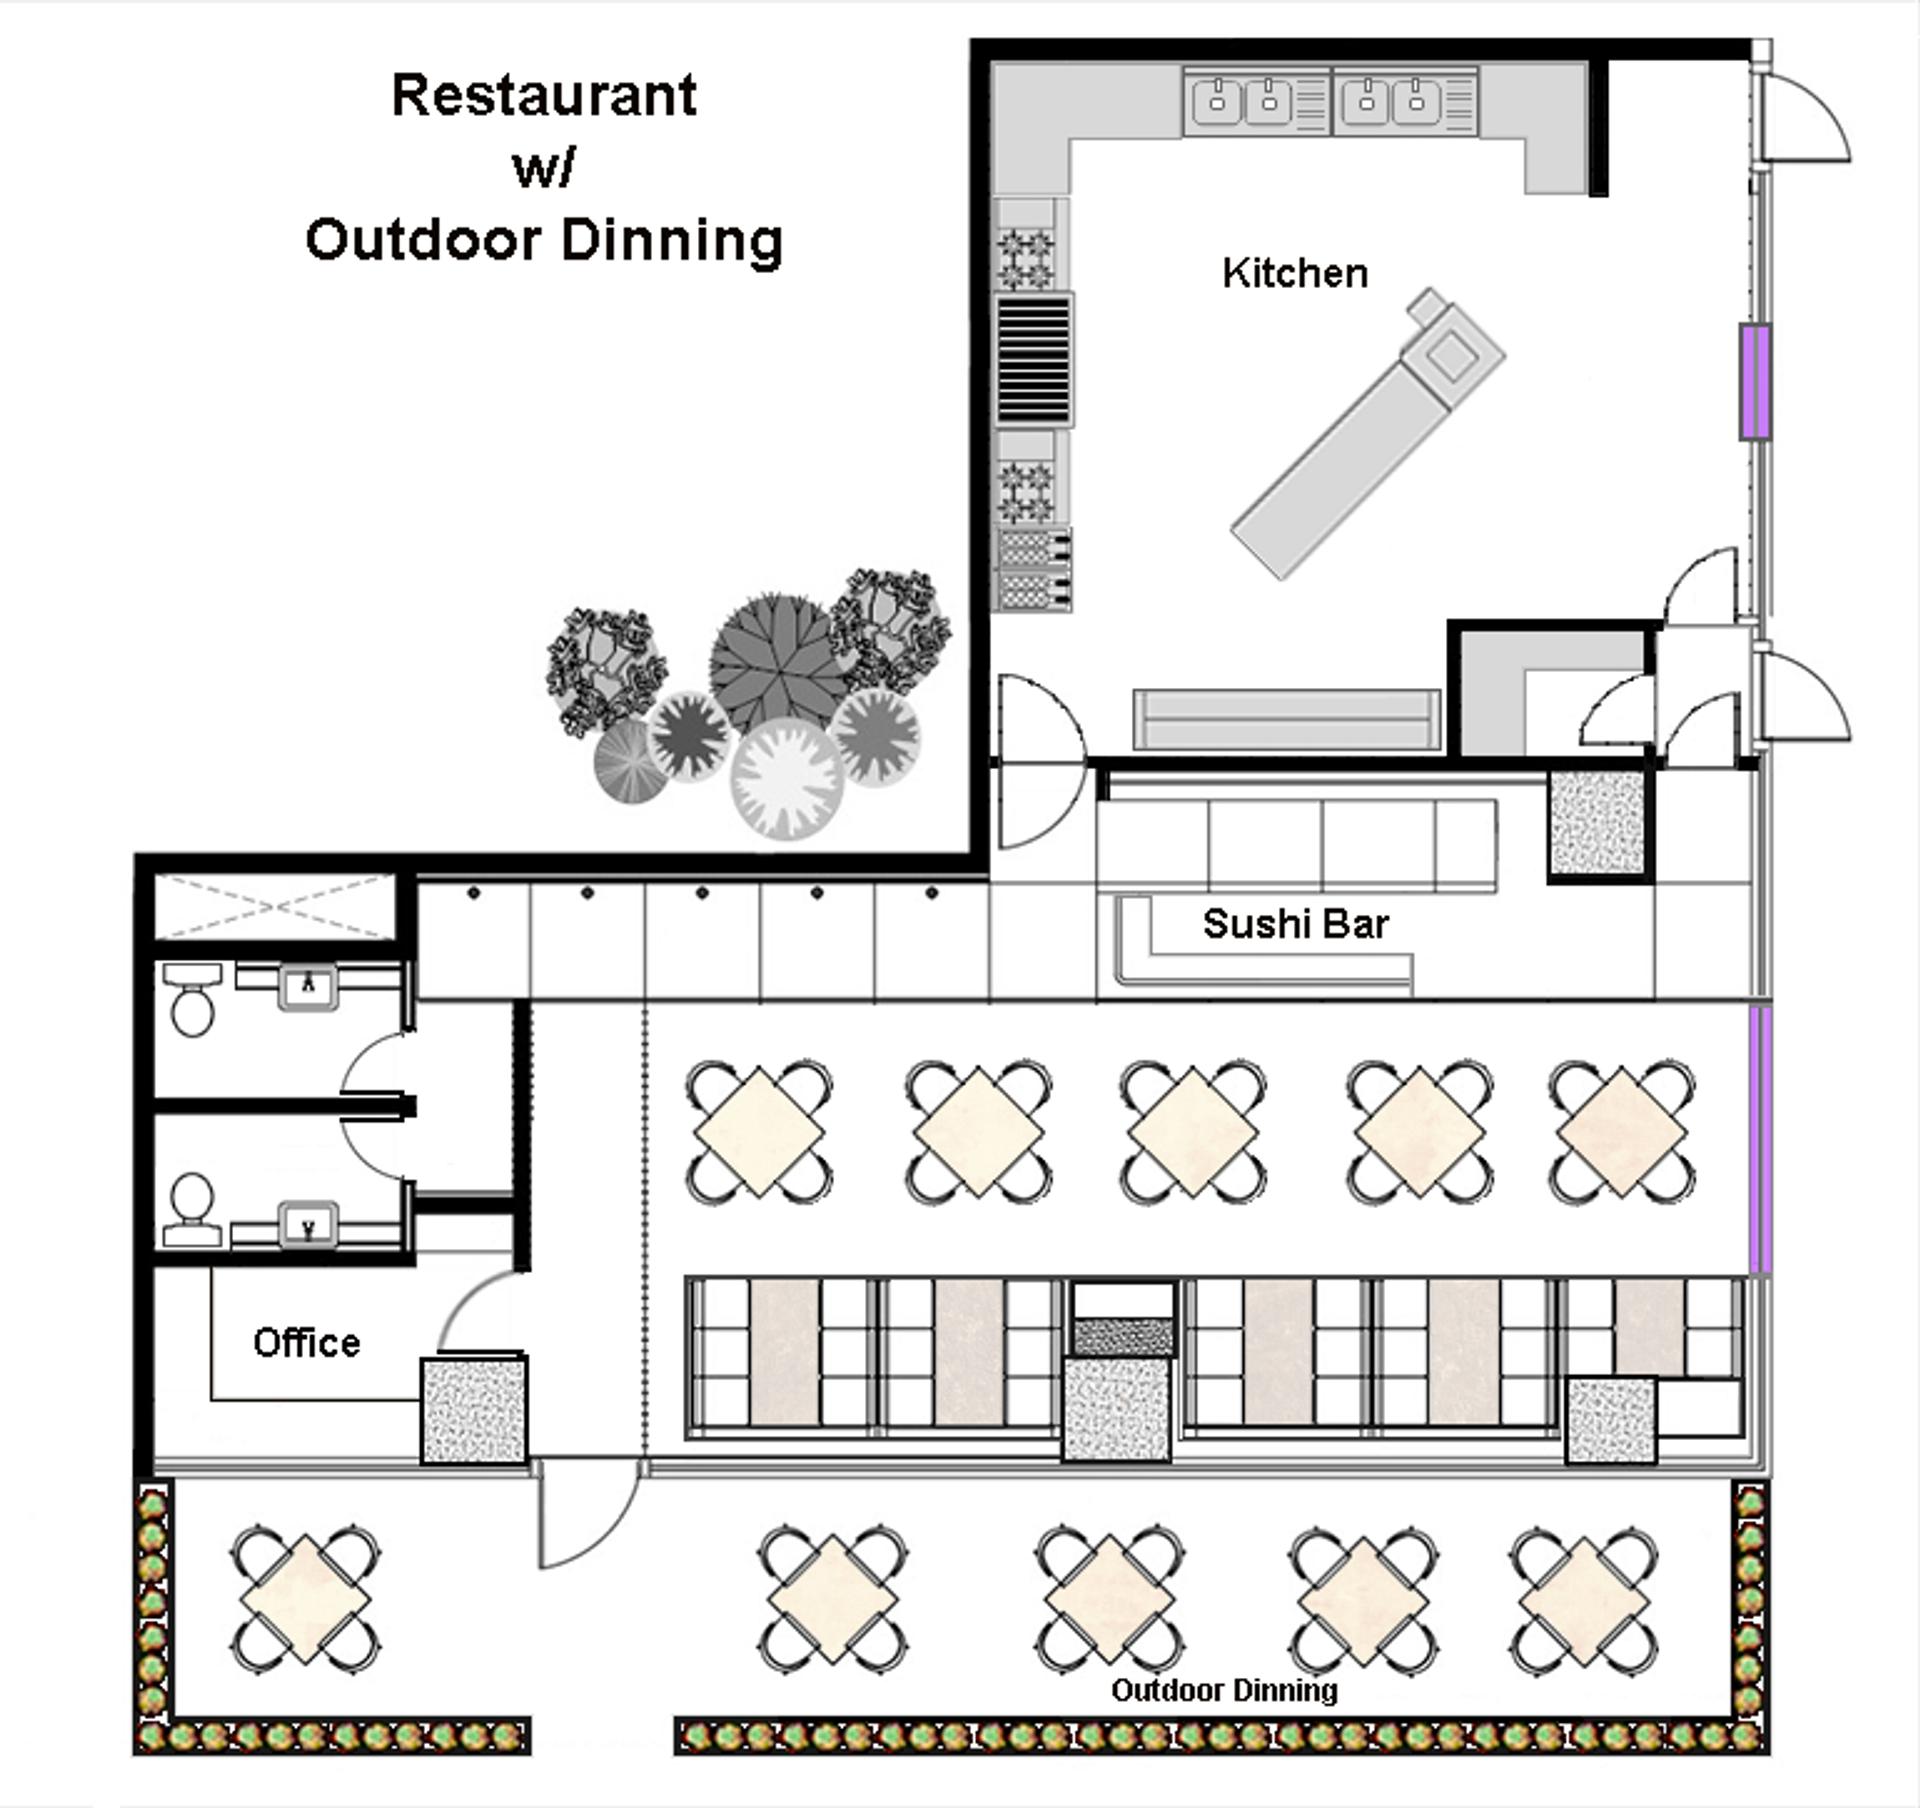 A generic restaurant floor plan